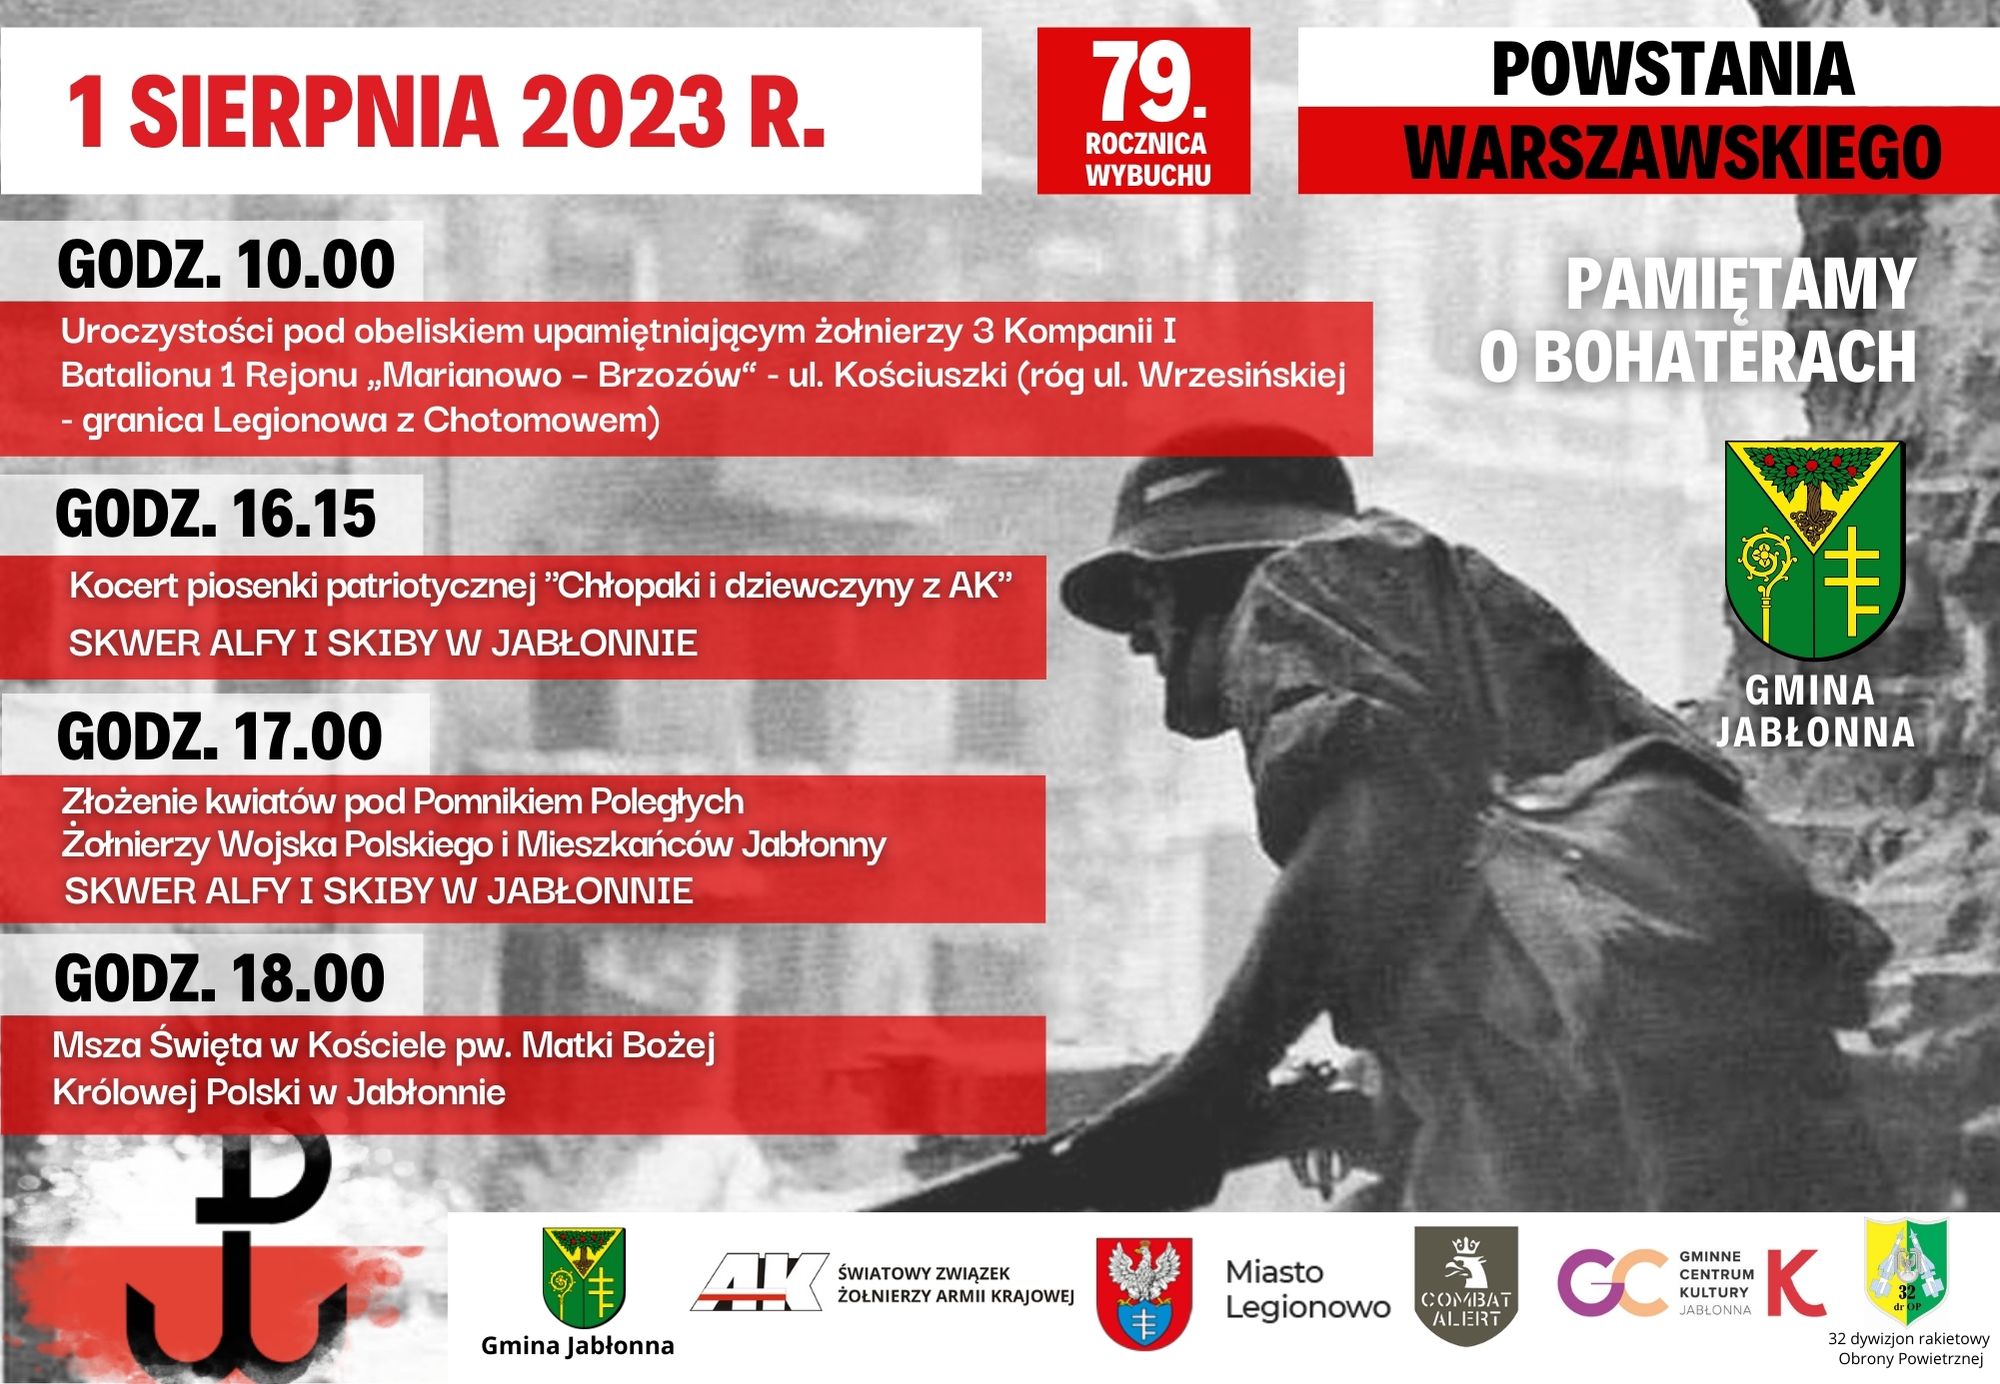 1 sierpnia oddajemy hołd uczestnikom Powstania Warszawskiego, którzy przez 63 dni nieustępliwie walczyli nie tylko o wolność i sprawiedliwość ale także o godność i ducha narodu. W godzinę 